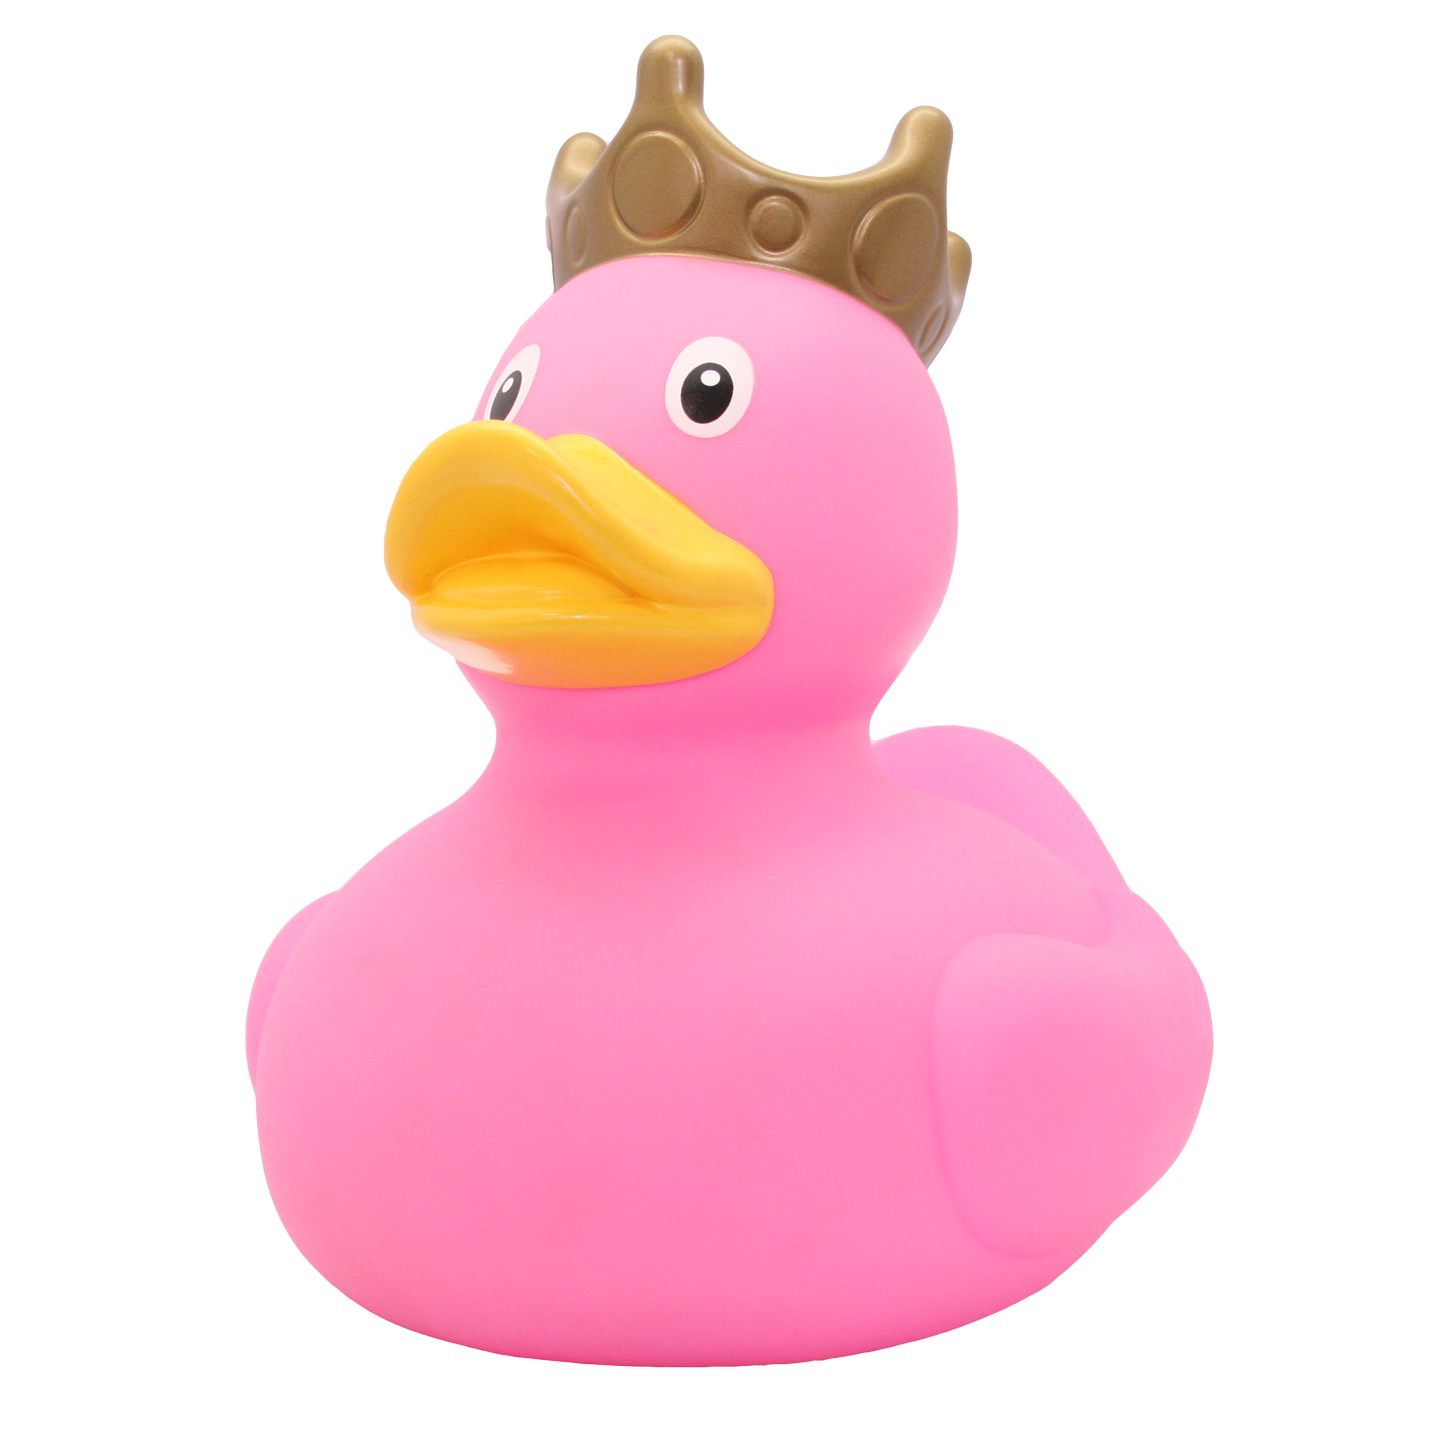 XXL crown pink duck